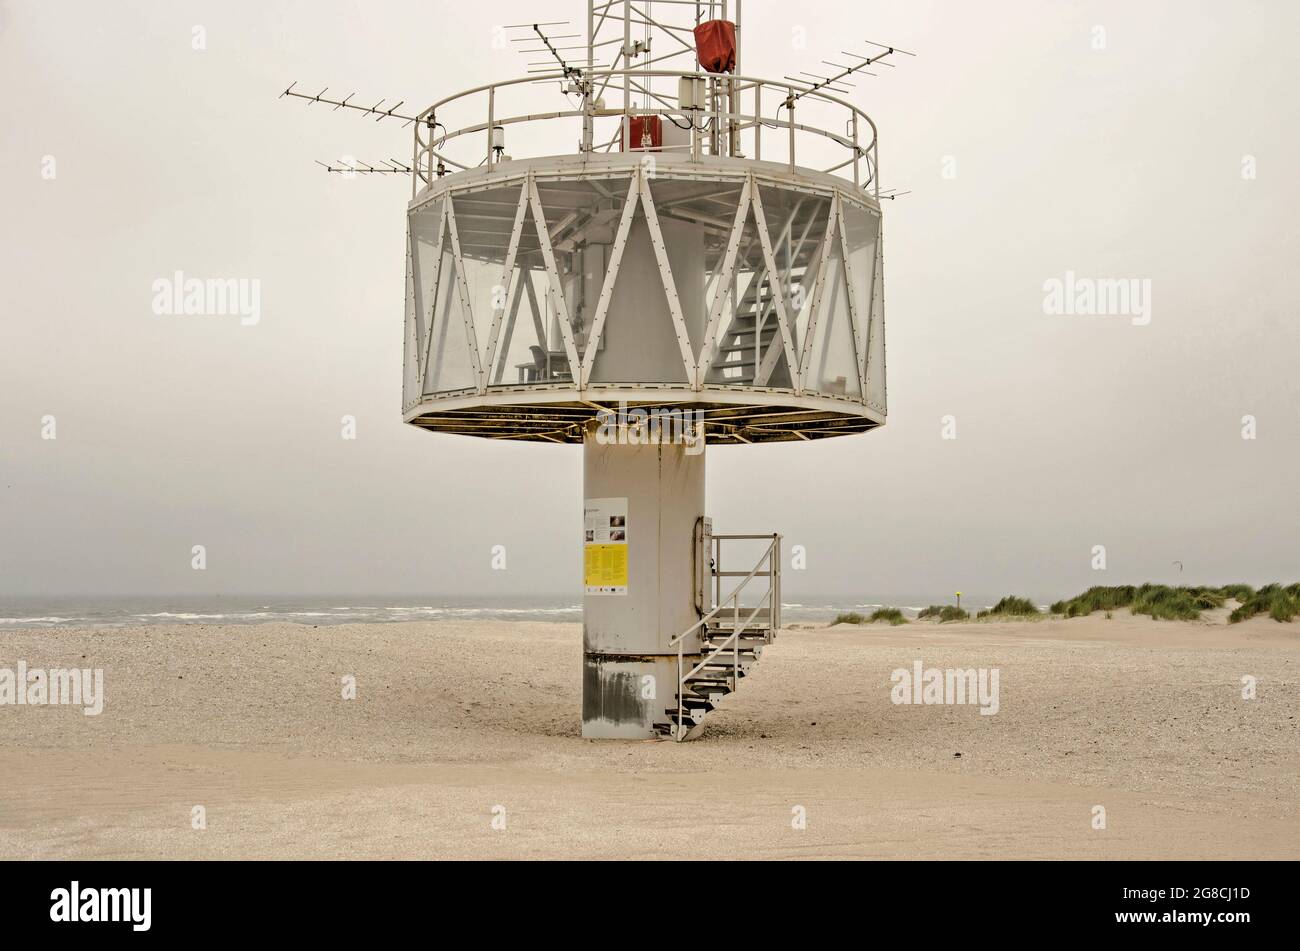 Monster, Países Bajos, 14 de julio de 2021: La sección inferior de la torre de observación anexo oficina de la defensa costera de Zandmotor (Sand Engine) Foto de stock